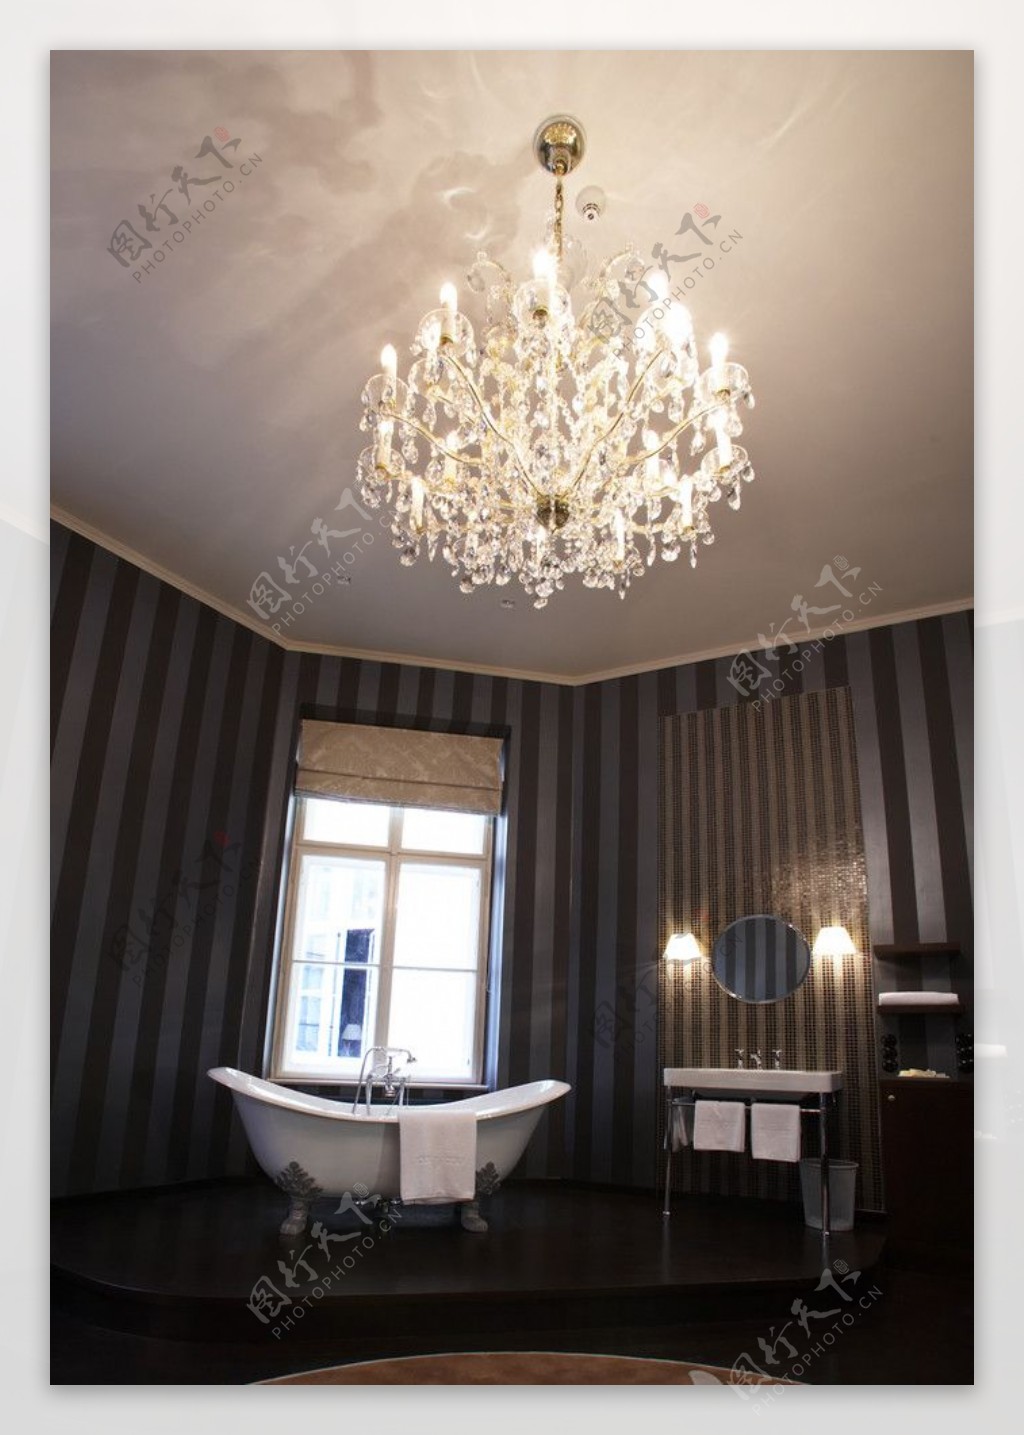 浴室室内设计浴缸水晶吊灯黑白调子图片